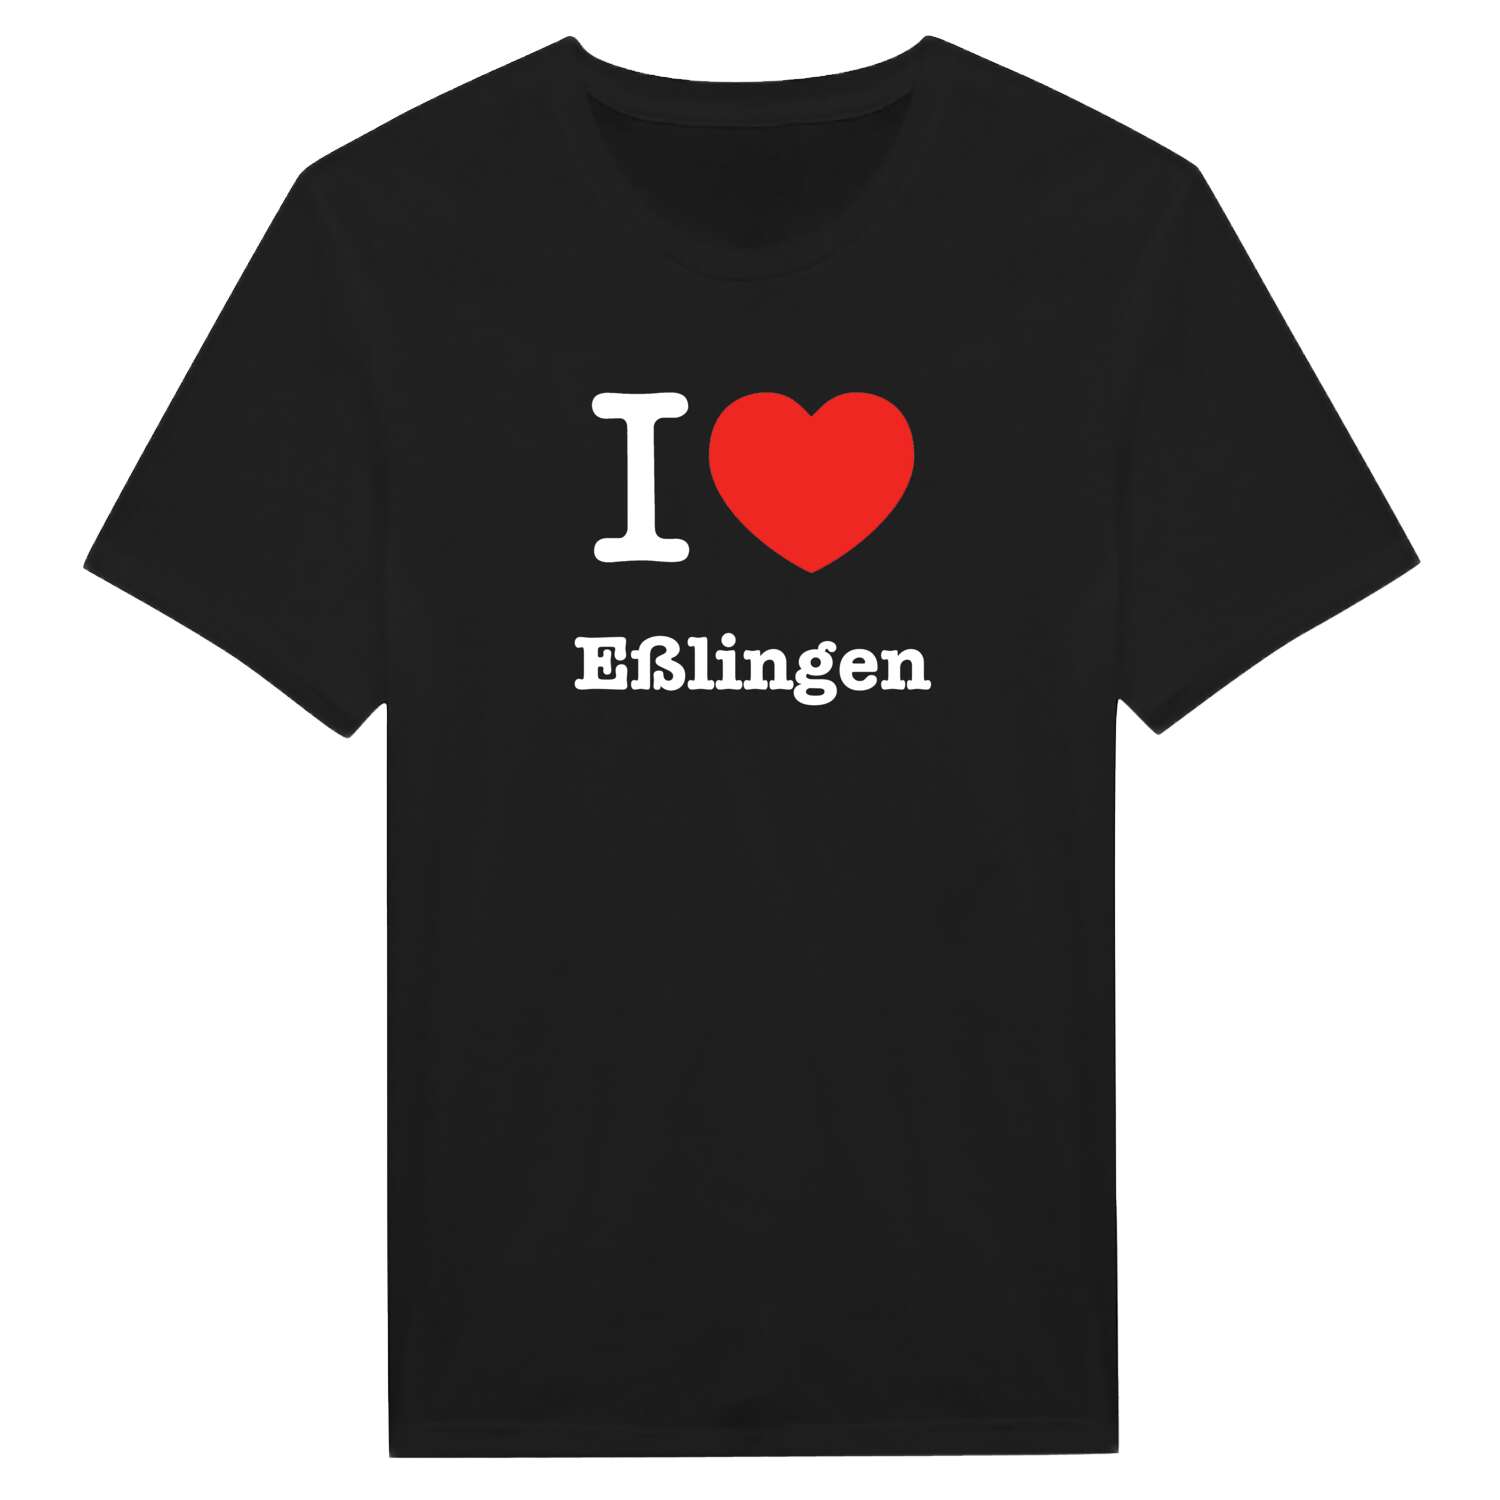 Eßlingen T-Shirt »I love«